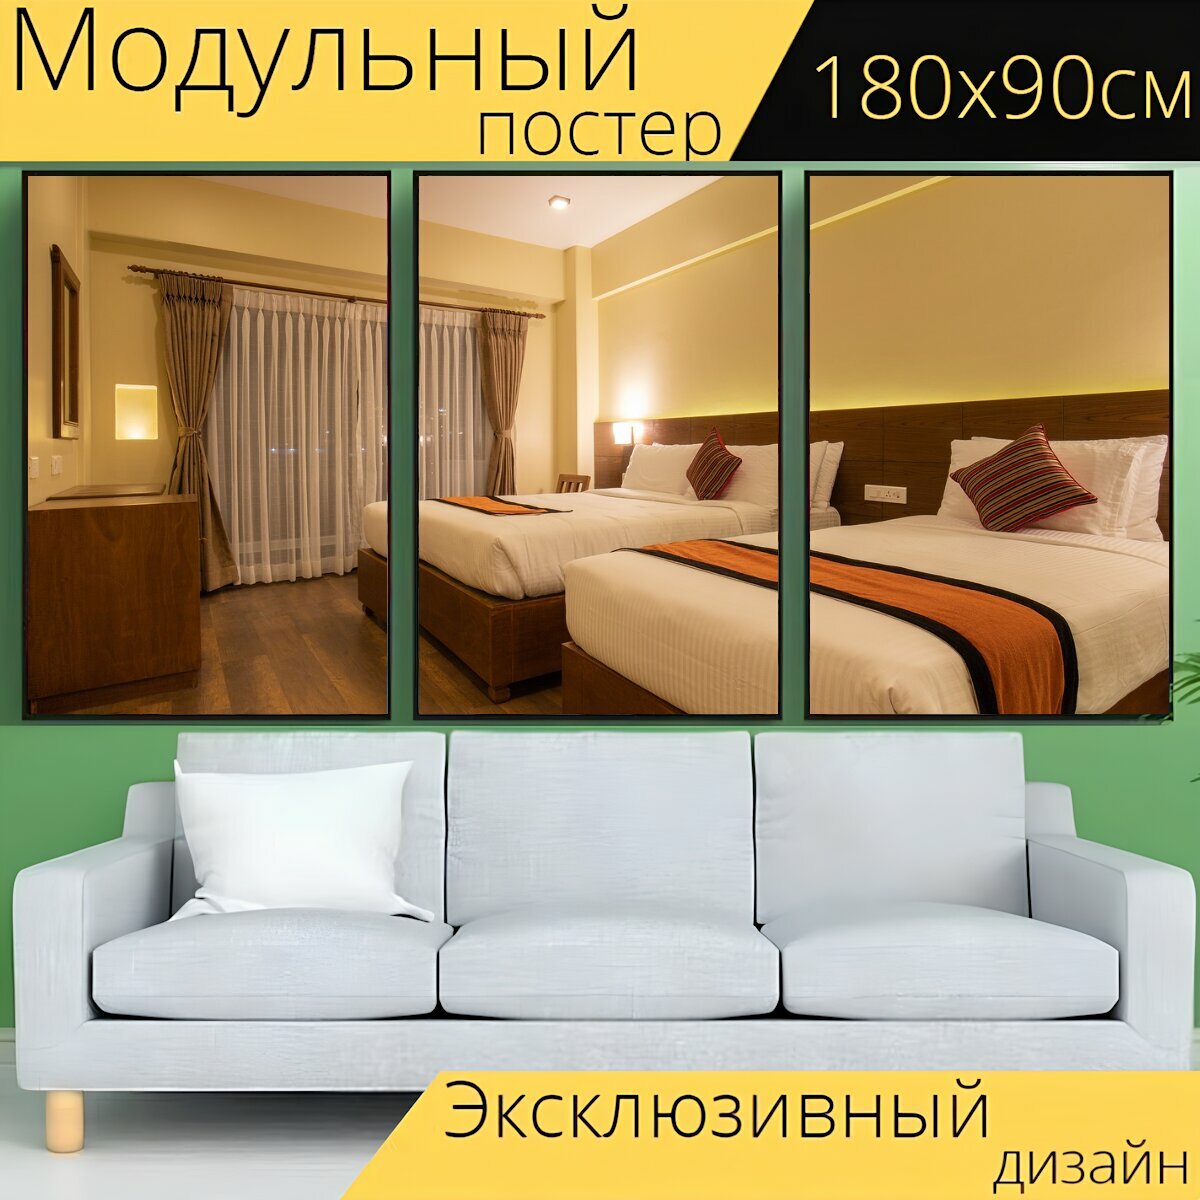 Модульный постер "Комната, отель, роскошь" 180 x 90 см. для интерьера